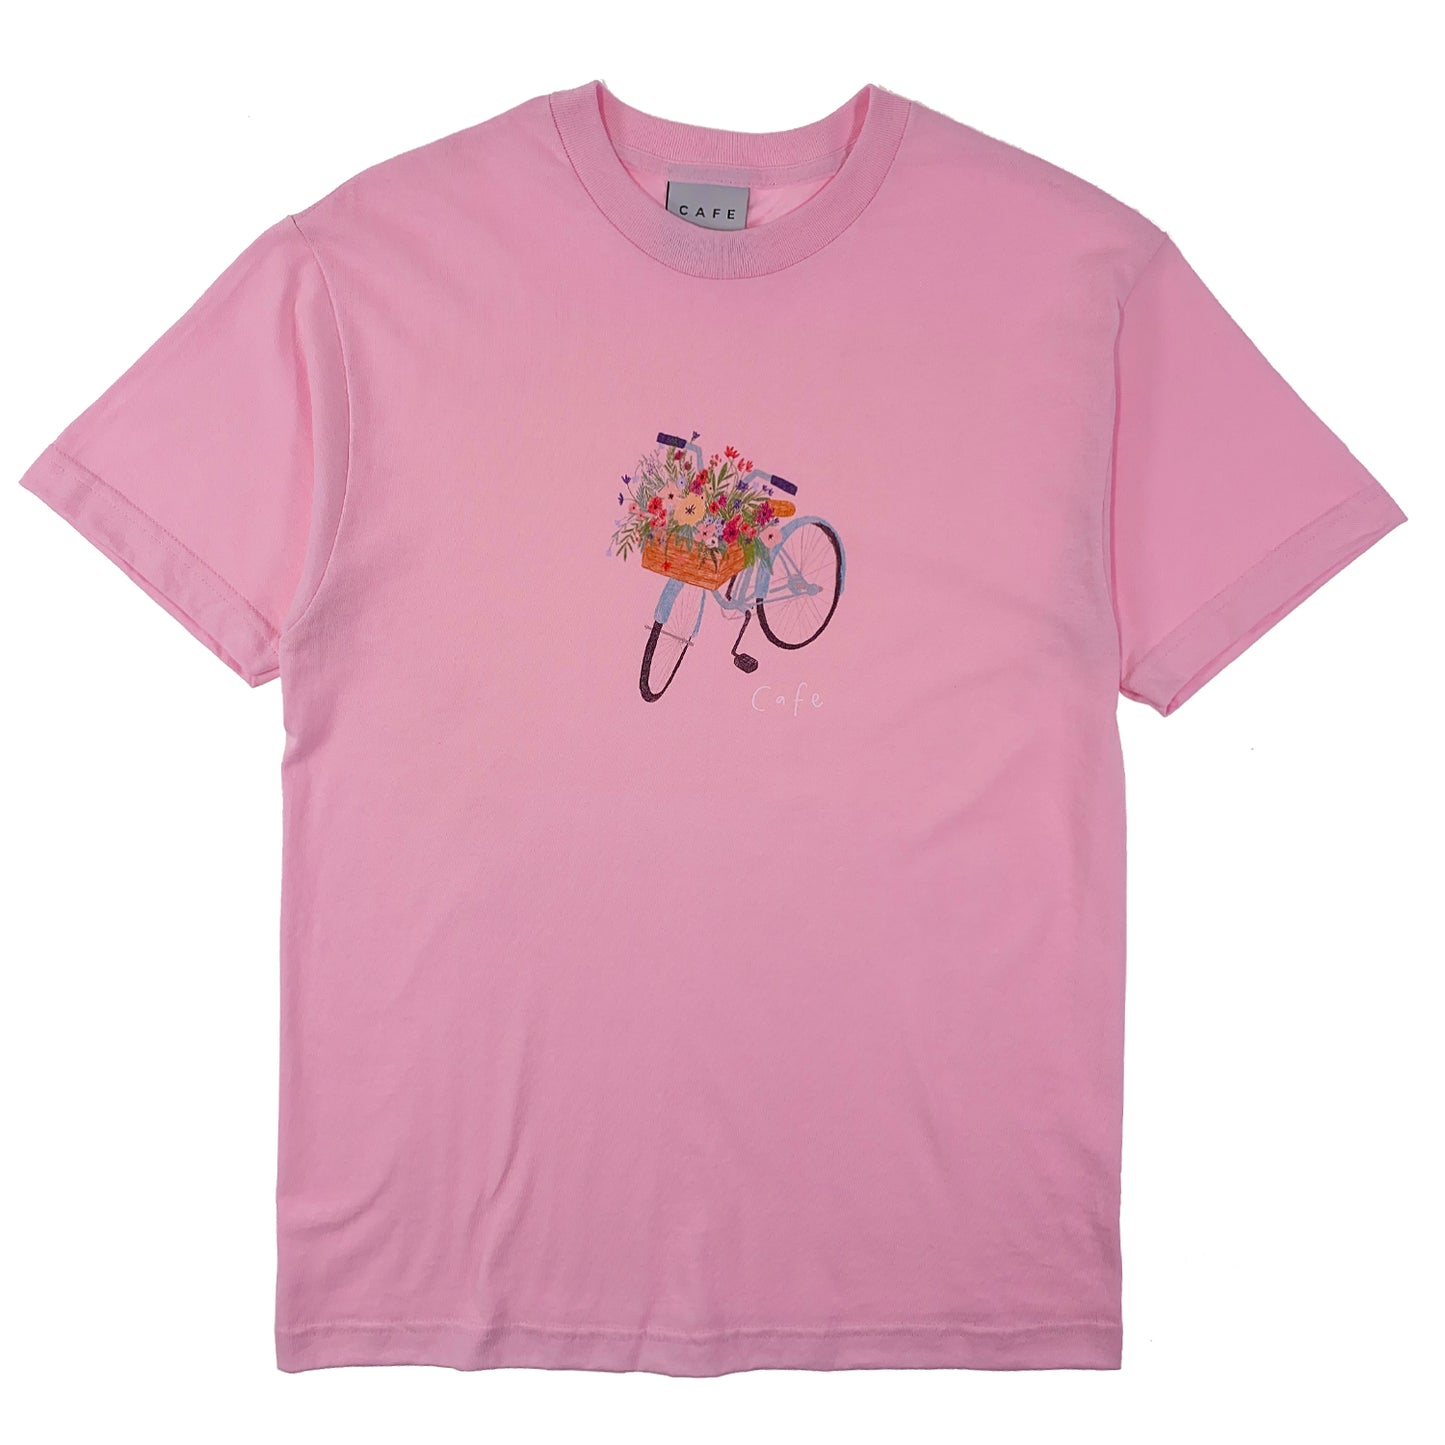 Skateboard Cafe - Flower Basket T Shirt - Light Pink - Prime Delux Store